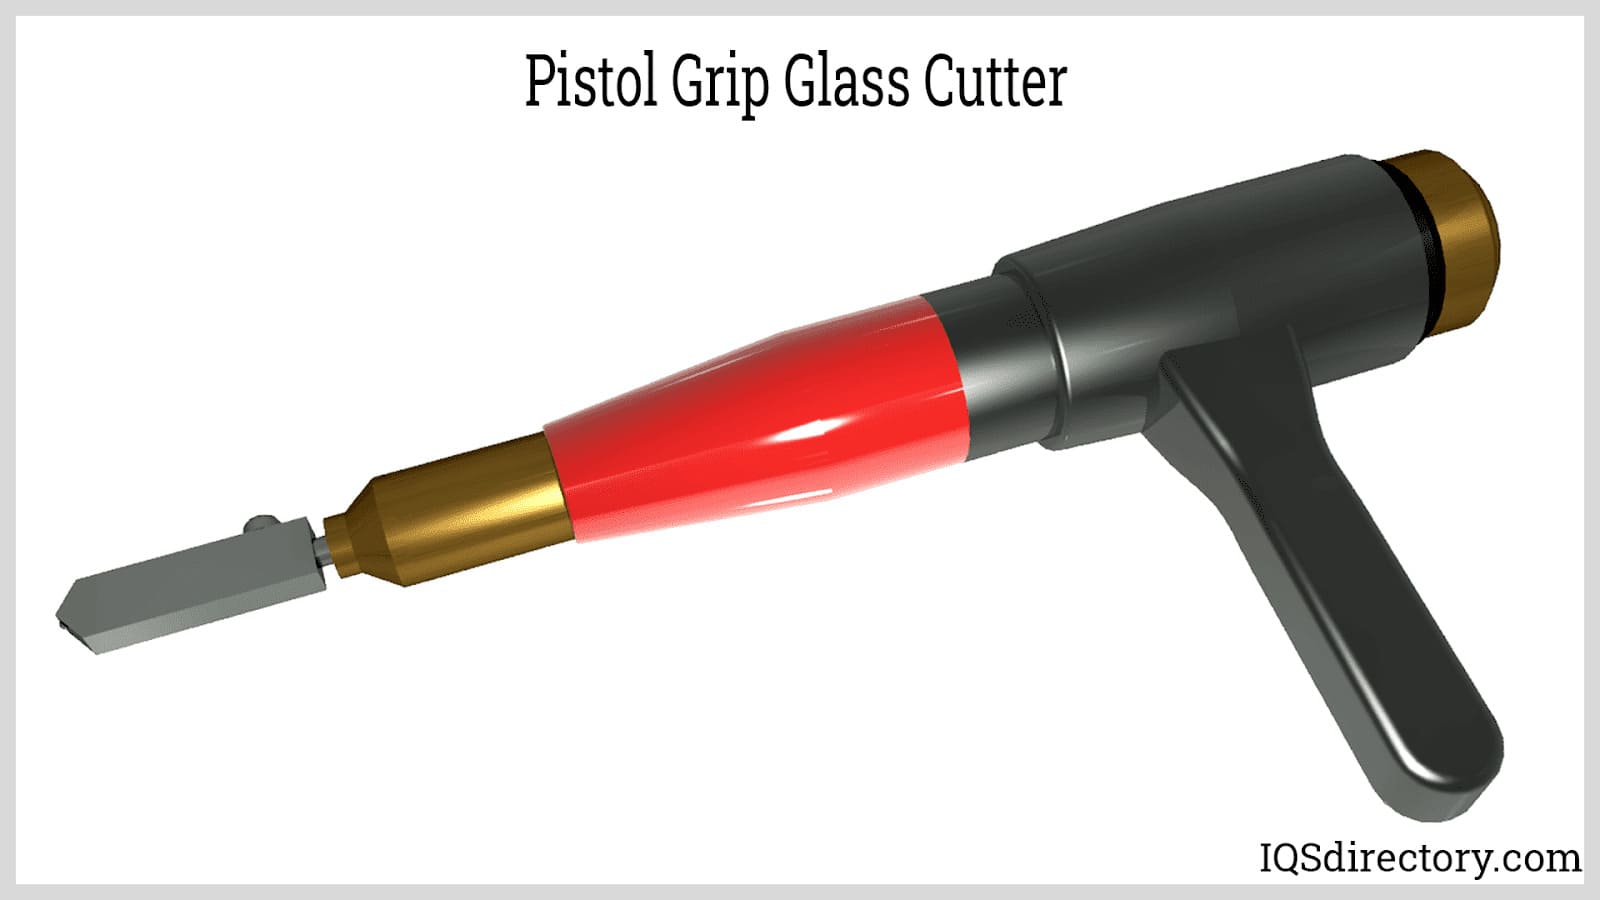 https://www.iqsdirectory.com/articles/glass-cutting/pistol-grip-glass-cutter.jpg